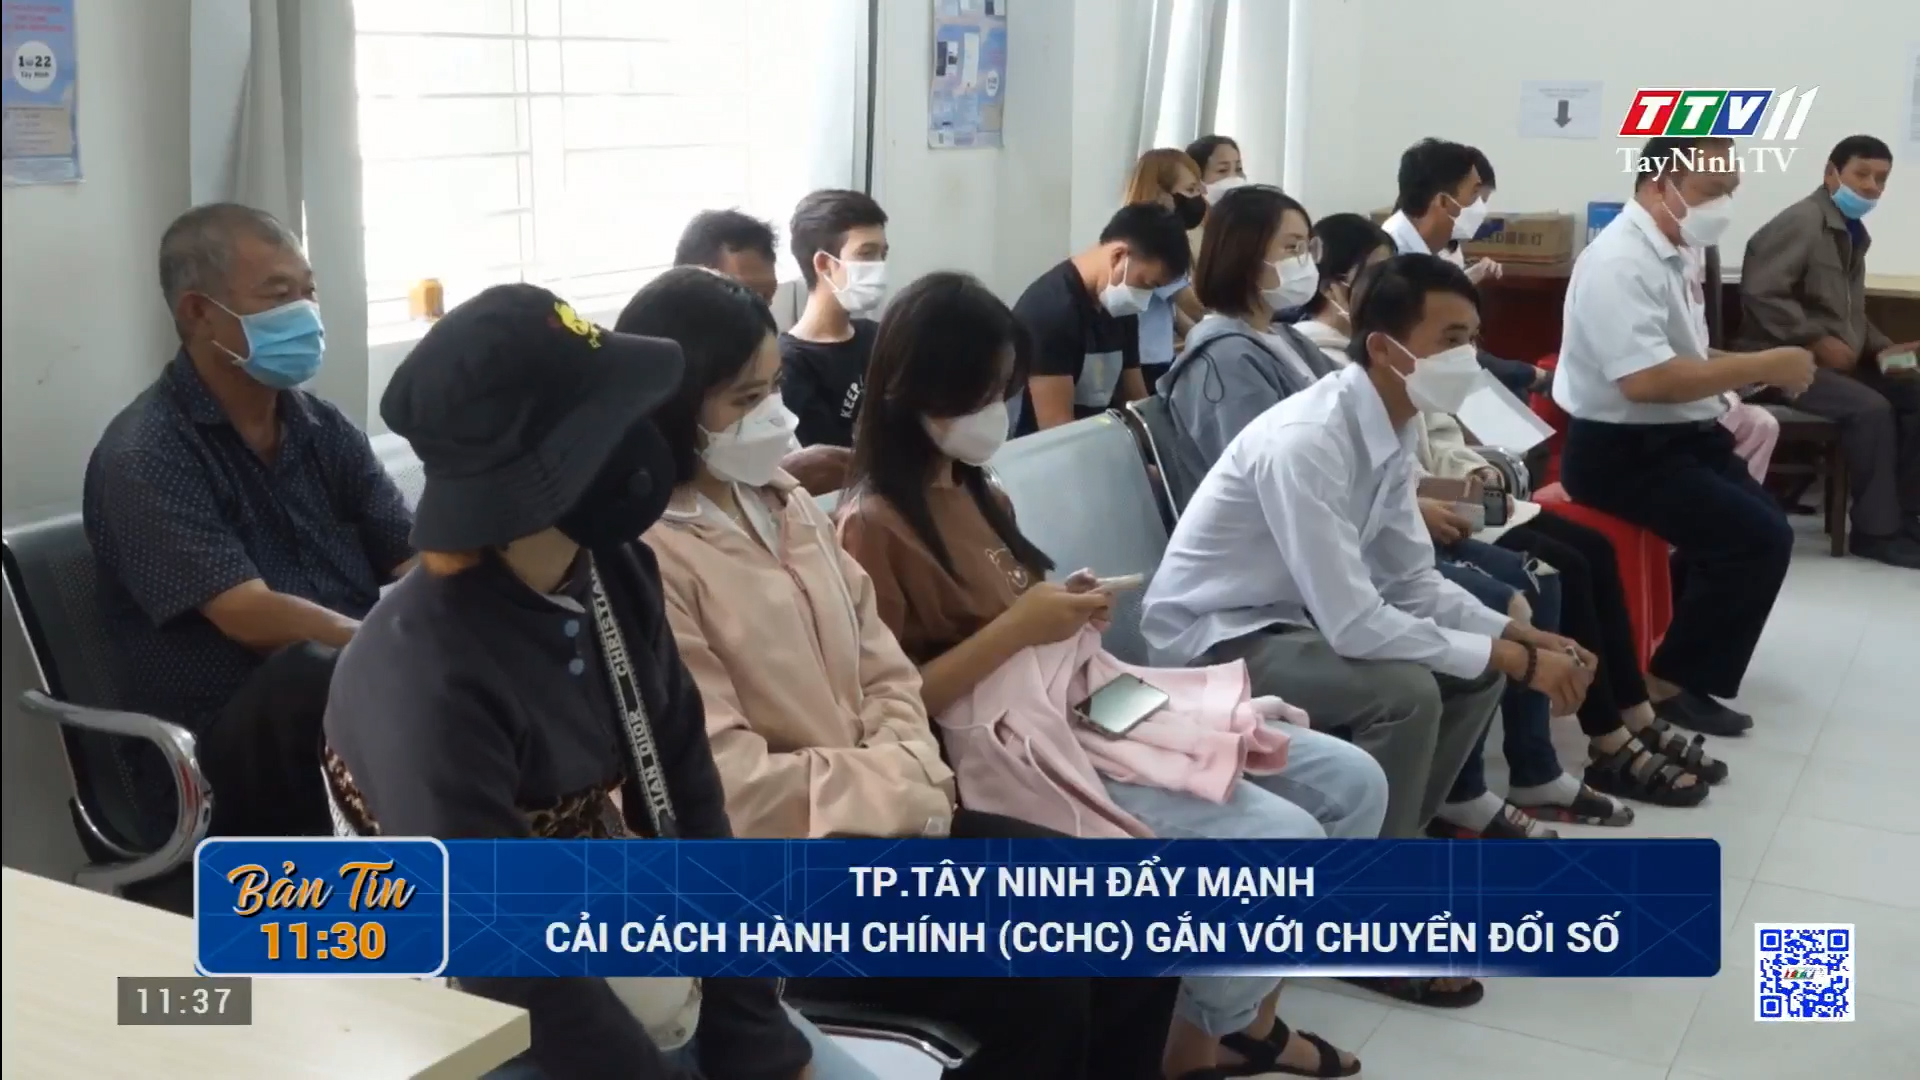 TP.Tây Ninh đẩy mạnh Cải cách hành chính (CCHC) gắn với chuyển đổi số | TayNinhTV